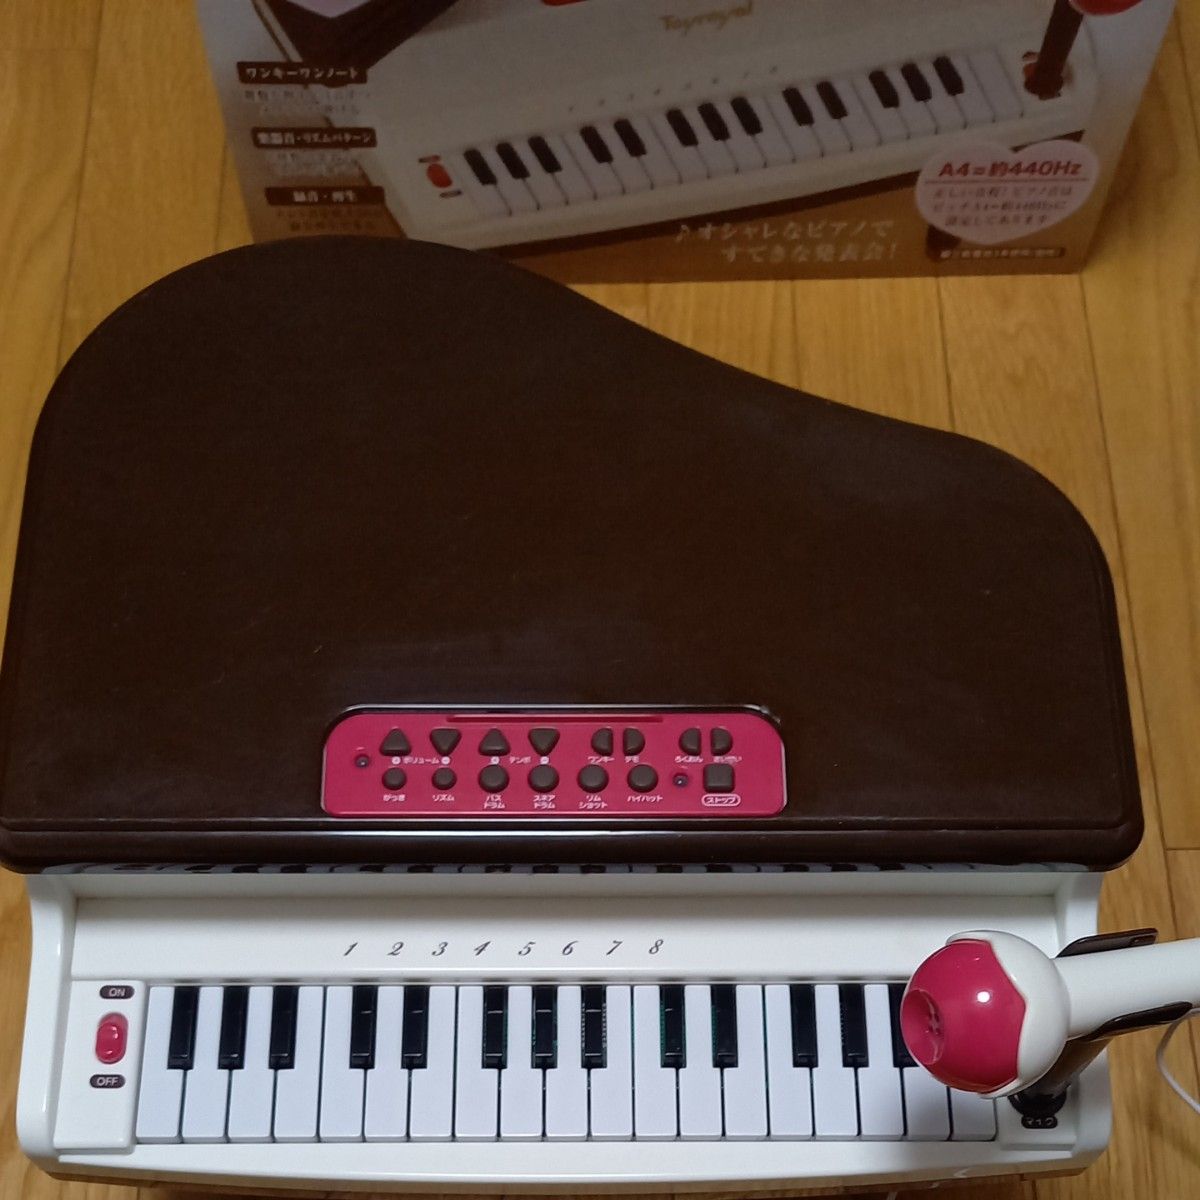  グランドピアノelegant ローヤル 知育玩具 ピアノ 楽器 おもちゃ gift 誕生日プレゼント 音楽 piano